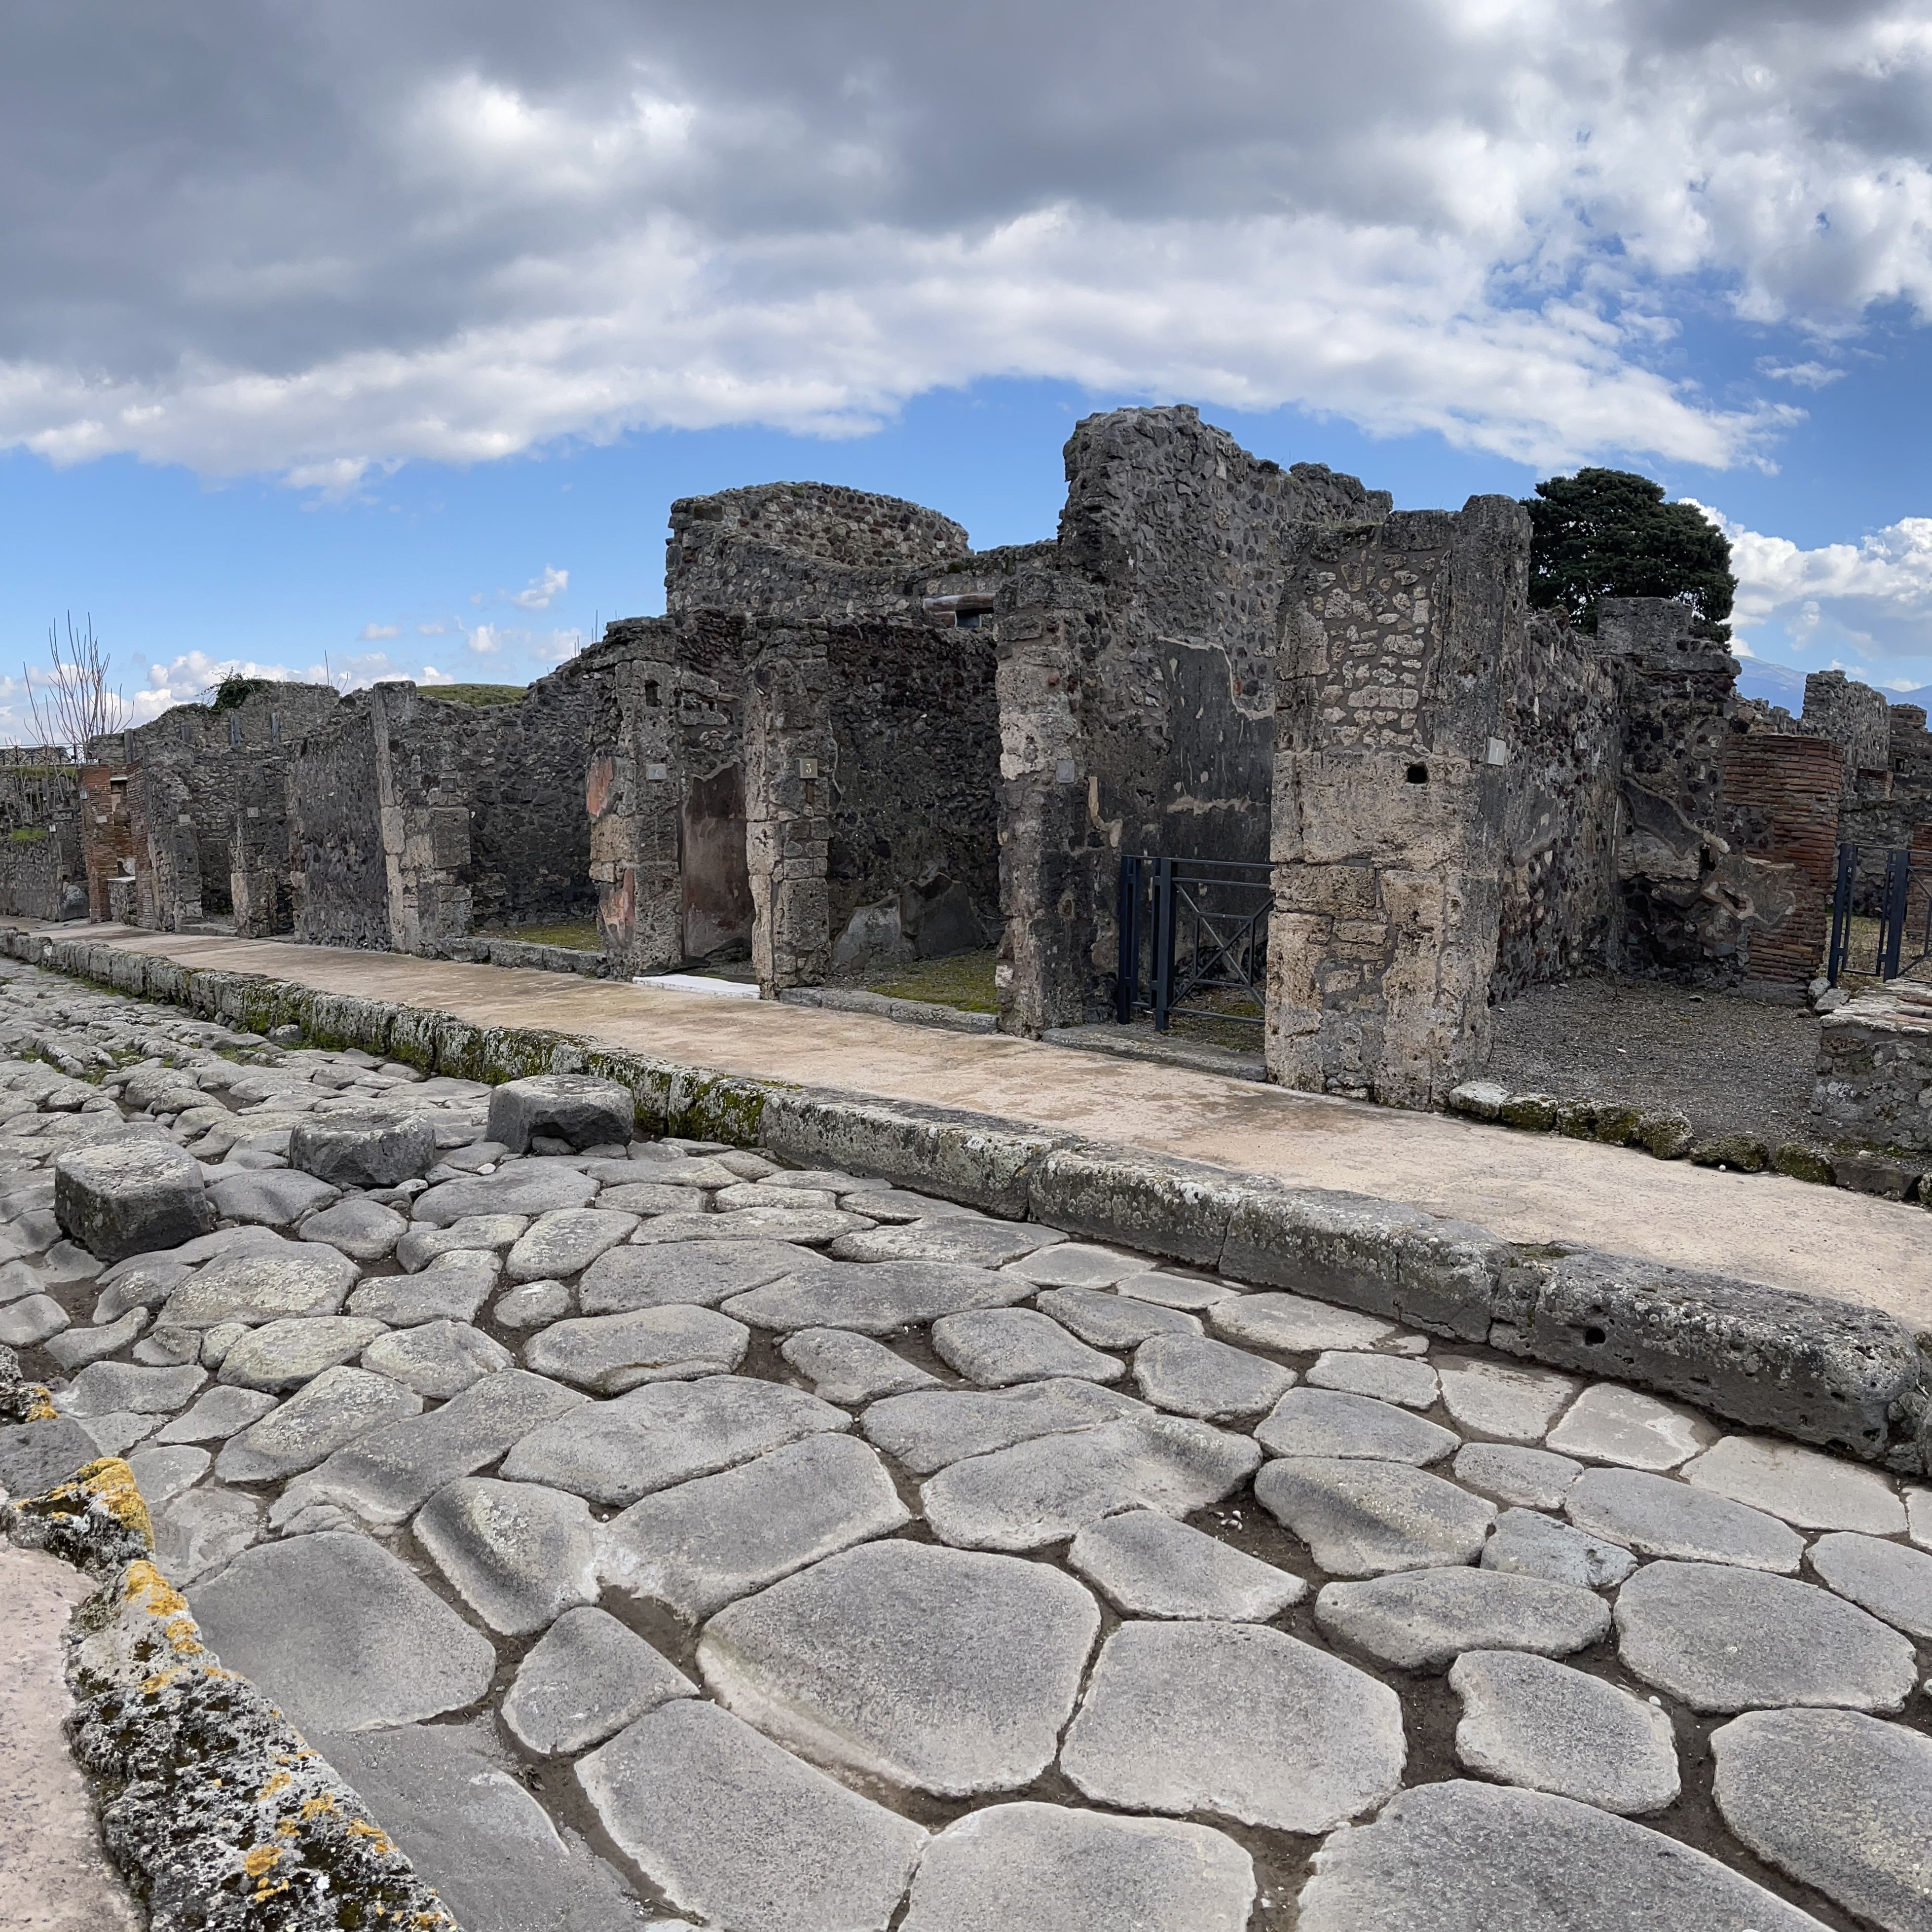 Straßen in Pompeji (2a−b) und Herculaneum (2c). Die polygonalen Steinplatten der Straßendecke fügten sich nahtlos aneinander. Über „Zebrastreifen“ konnten Fußgänger trockenen Fußes die Straßenseite wechseln (2b). Für die Karren wurden Joche im Überweg freigelassen.